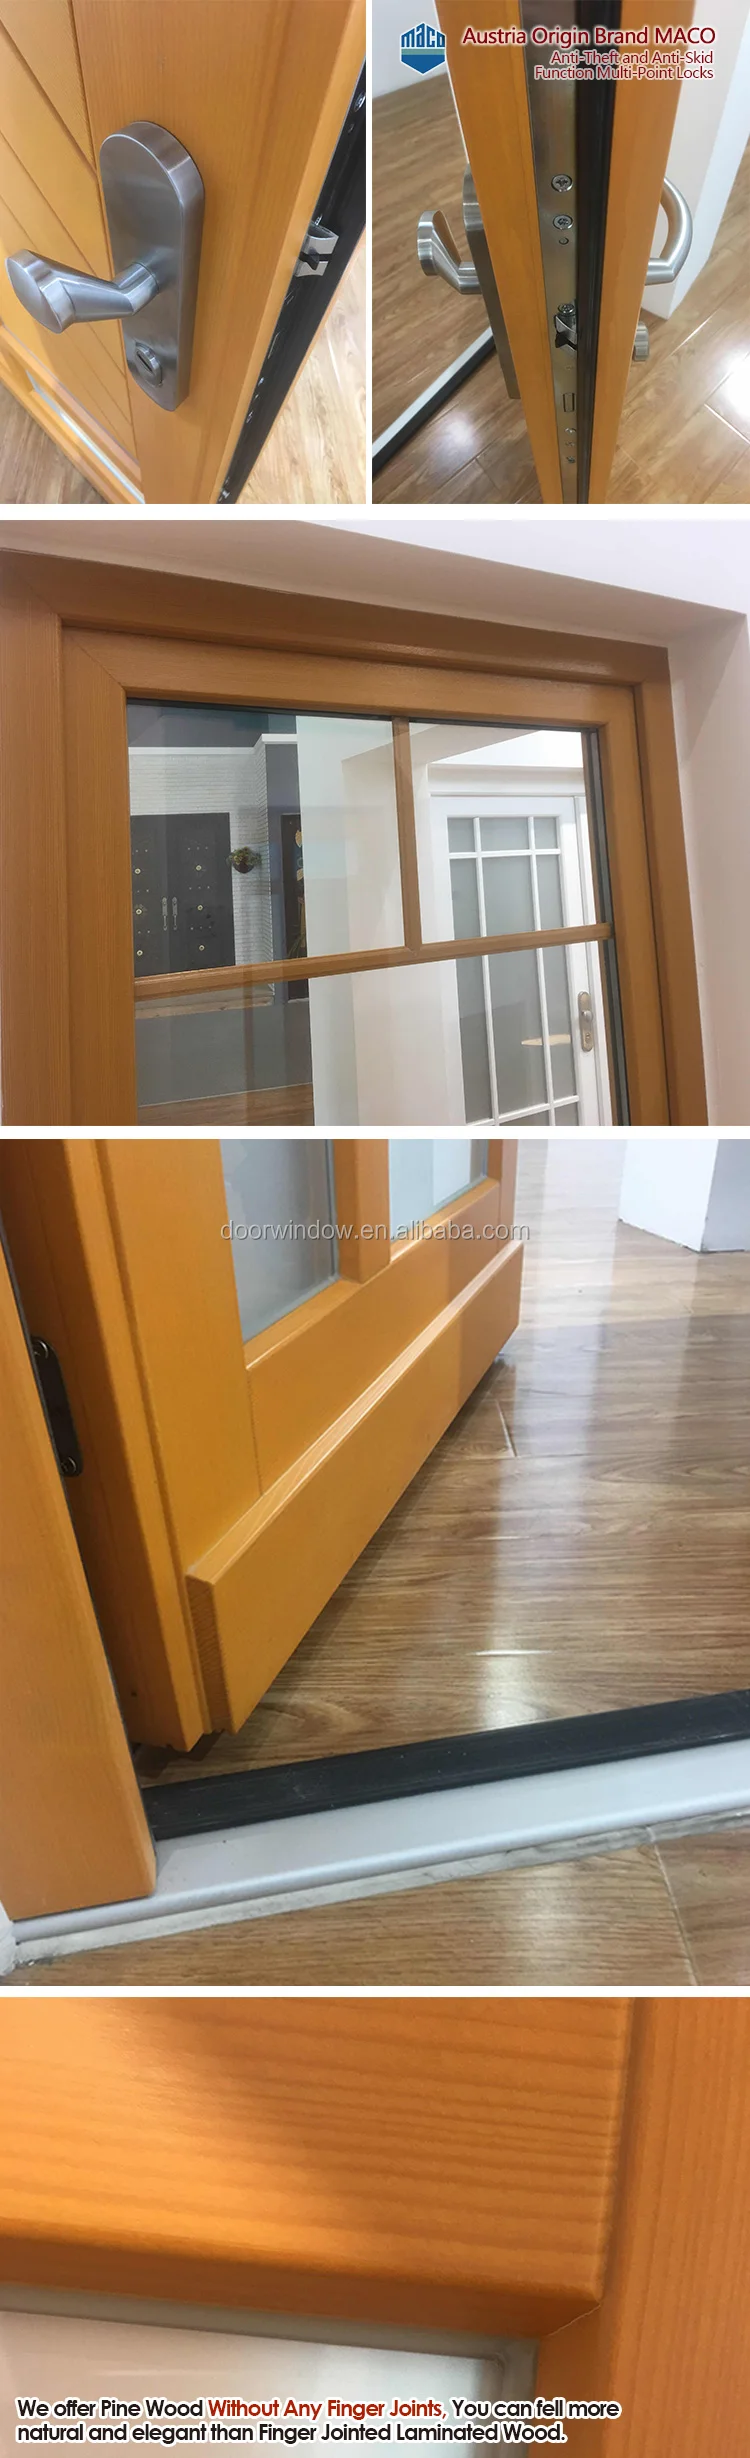 office doors interior Japanese wooden doors European style interior door